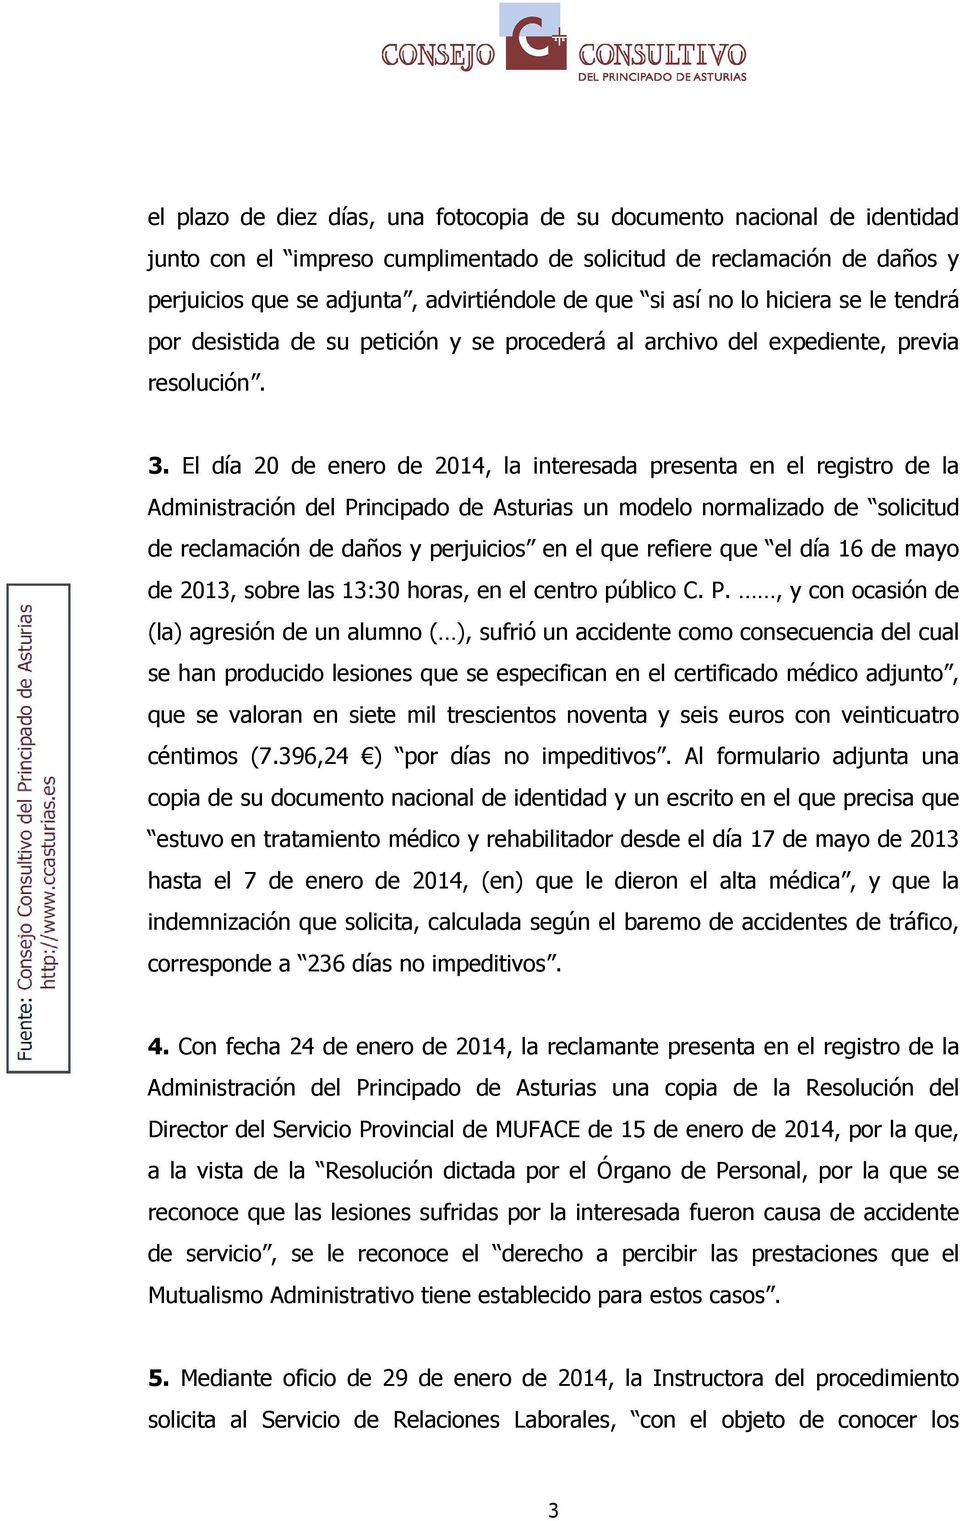 El día 20 de enero de 2014, la interesada presenta en el registro de la Administración del Principado de Asturias un modelo normalizado de solicitud de reclamación de daños y perjuicios en el que